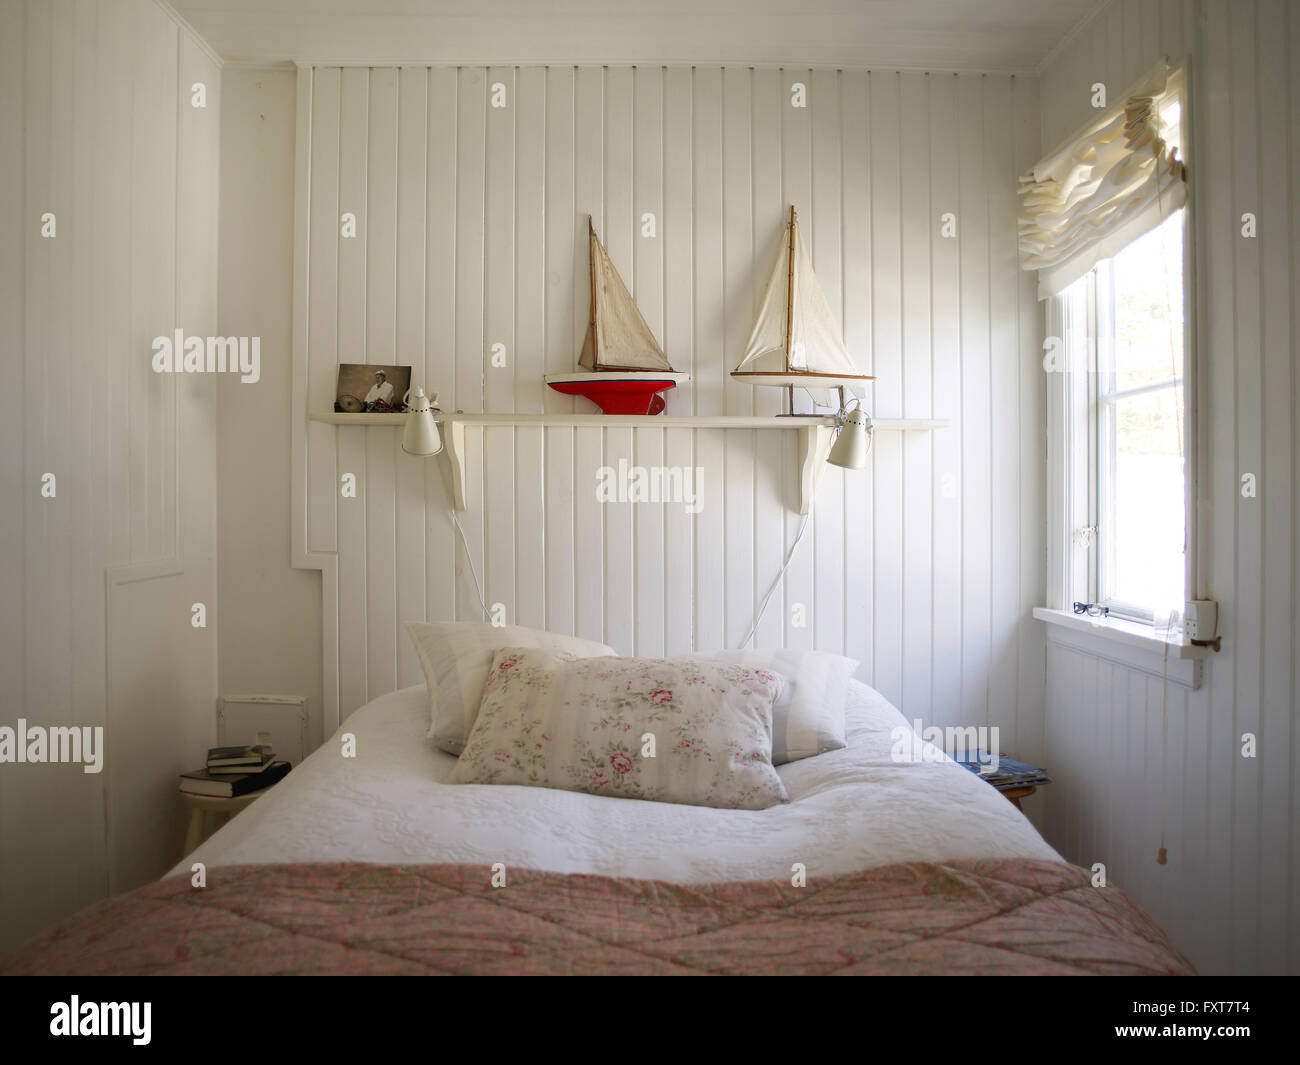 Schlafzimmer mit weißen Holzverkleidung und Bett Stockfotografie - Alamy